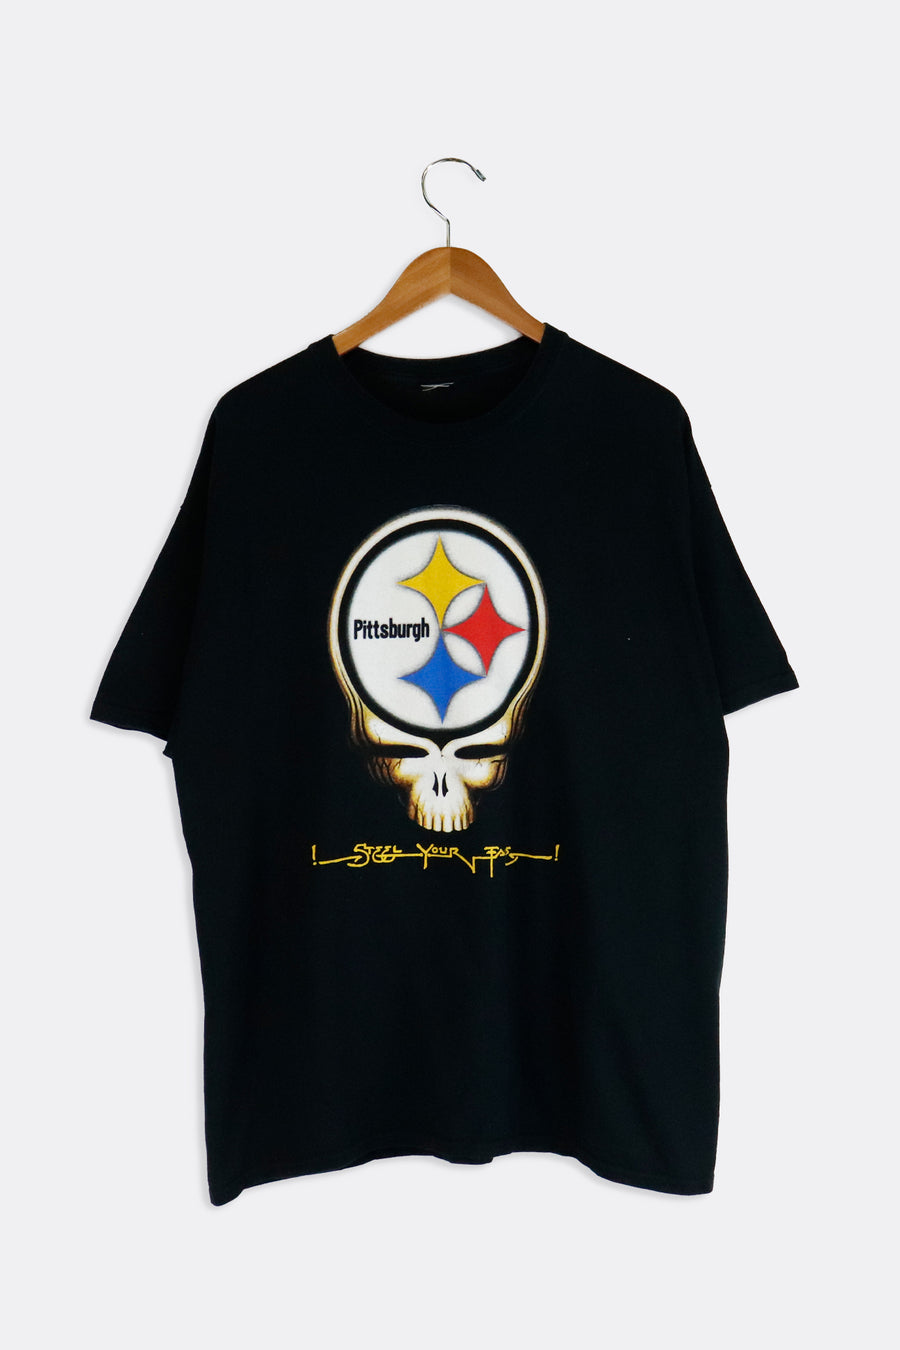 Vintage NFL Pittsburgh Steelers Grateful Dead T Shirt